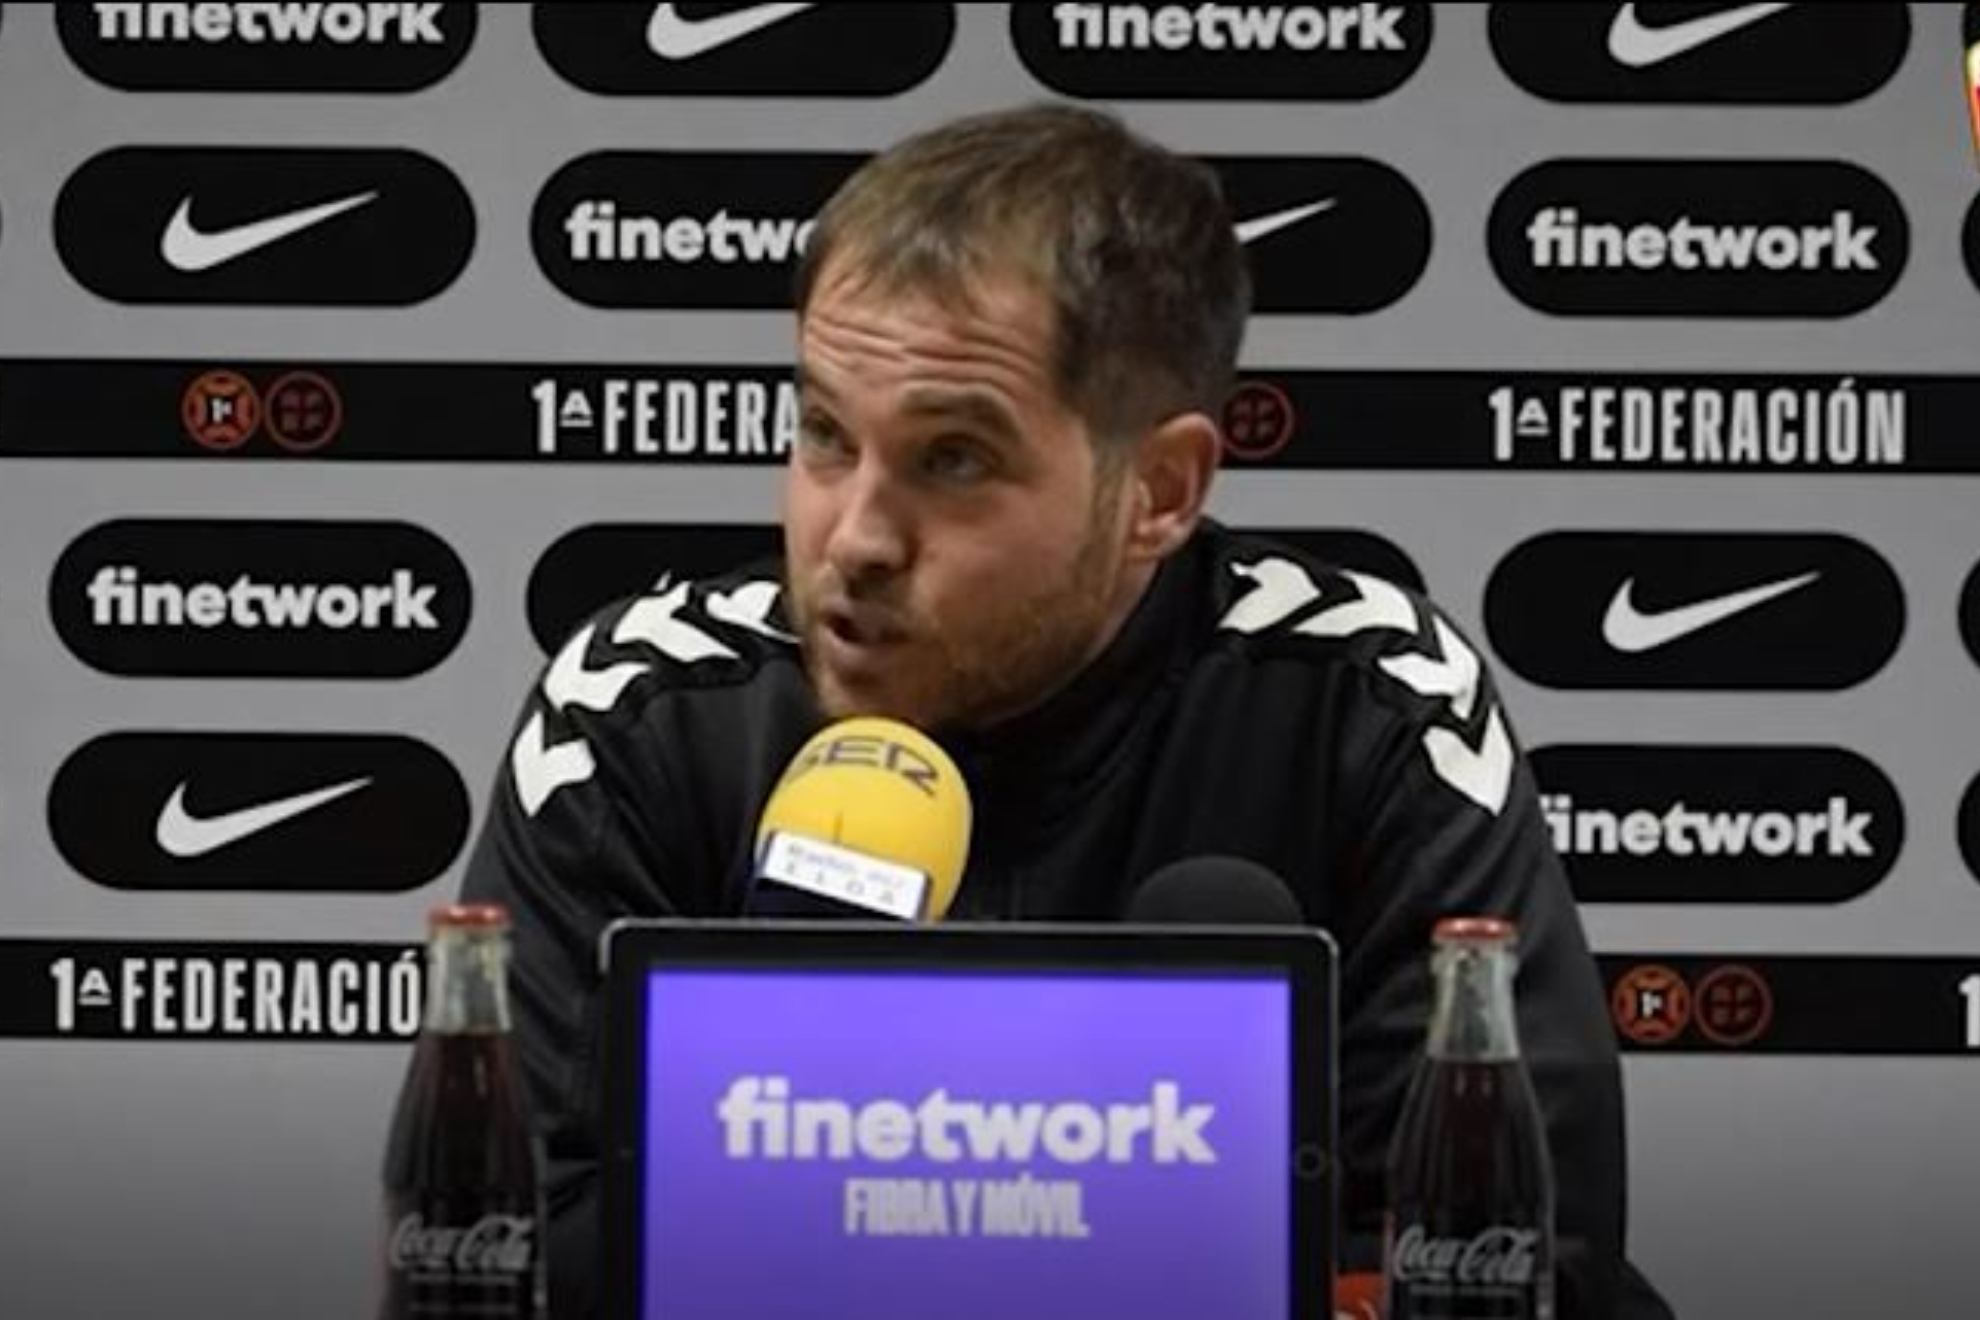 La rajada del entrenador del Sabadell: "Es Finetwork el patrocinador de la RFEF, el Eldense lder...